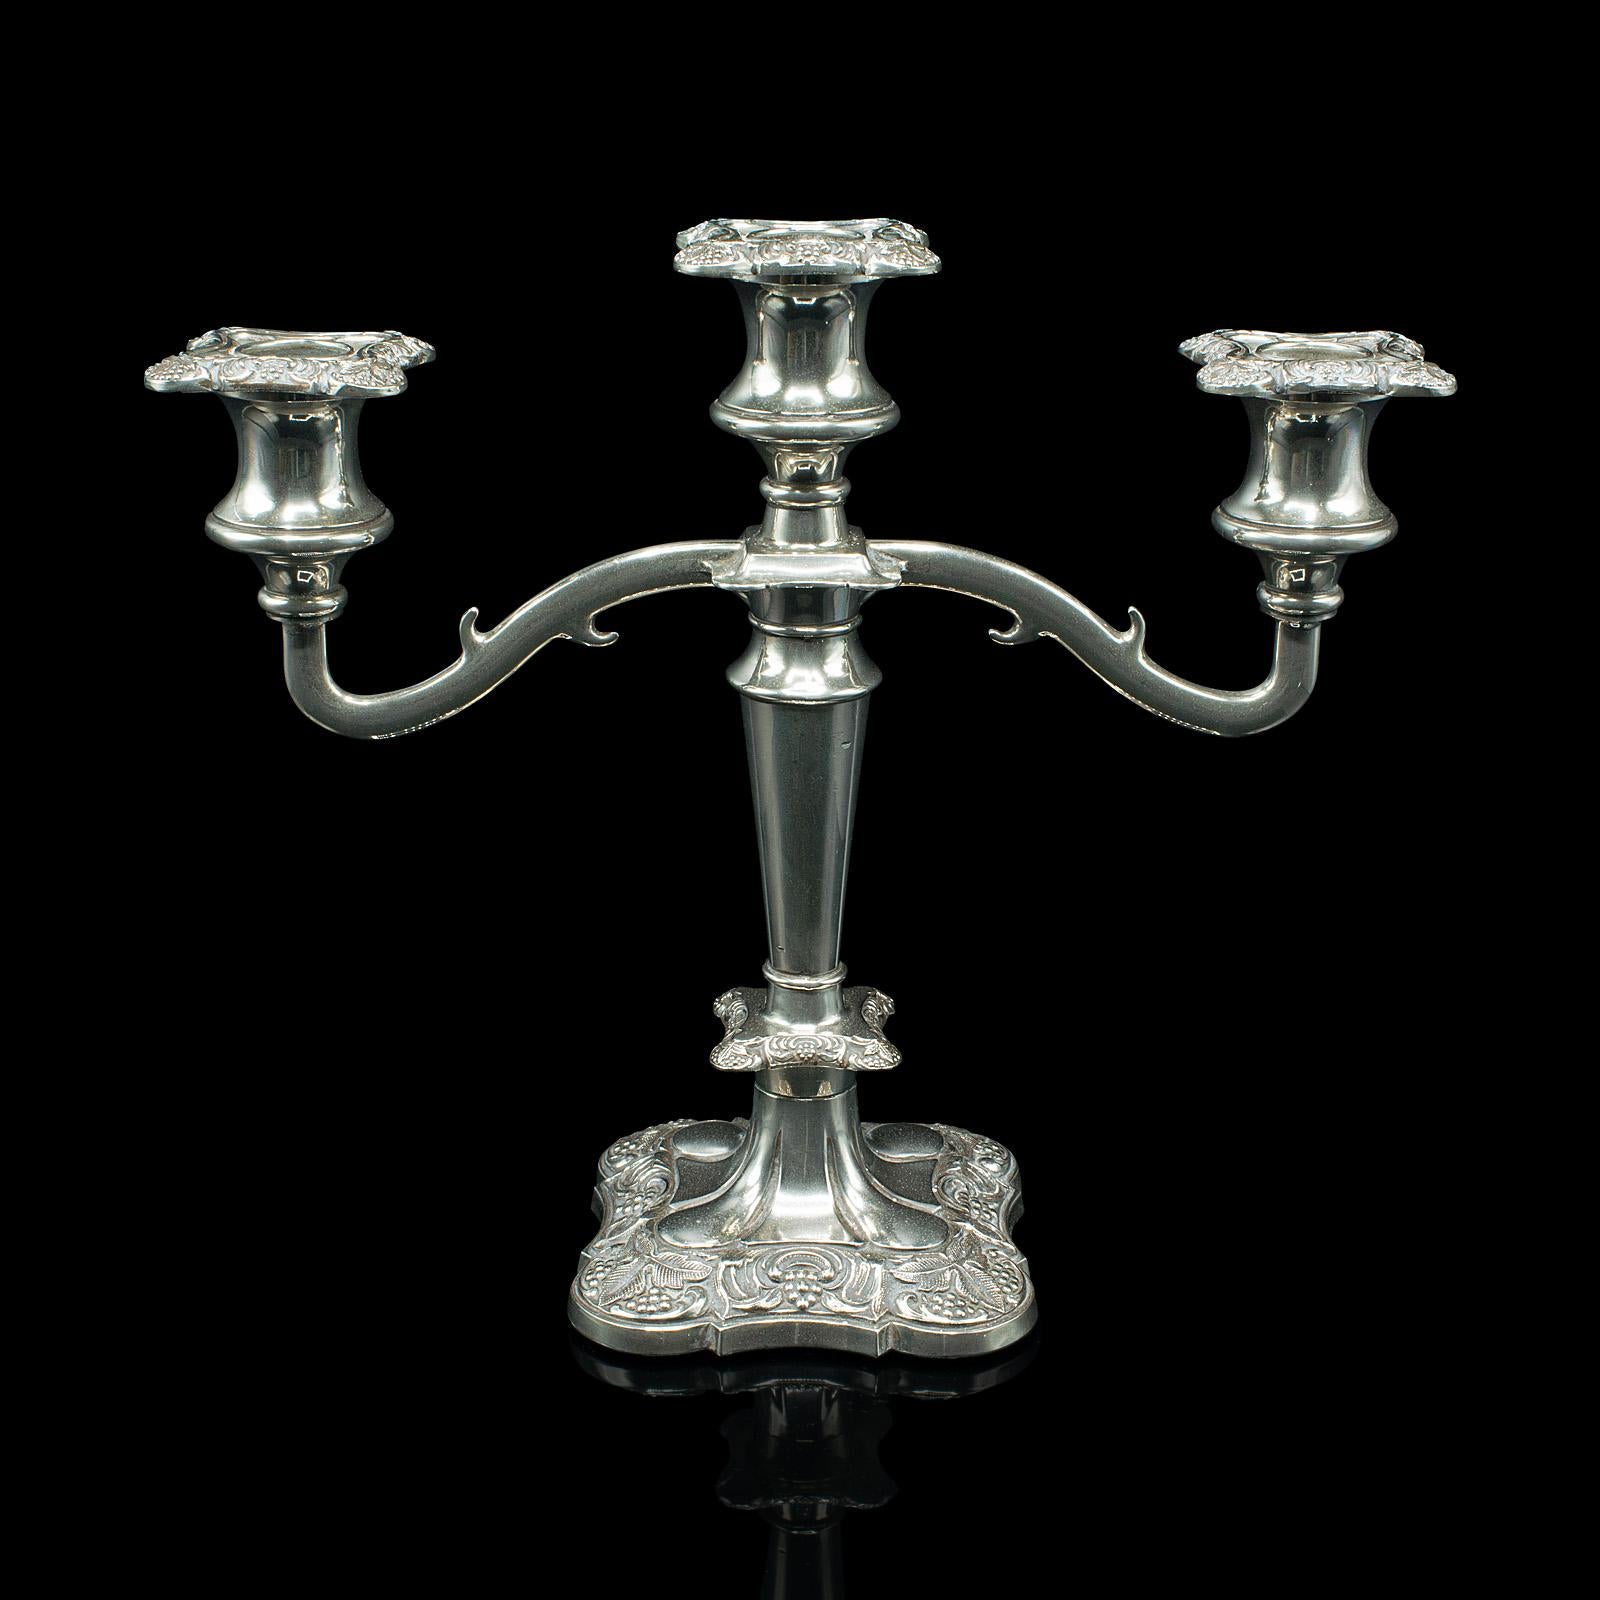 Il s'agit d'un candélabre décoratif ancien. Pièce maîtresse anglaise à trois branches, en métal argenté, datant de la fin de la période victorienne, vers 1900.

Pièce maîtresse attrayante de la fin de l'époque victorienne, avec des détails fins et